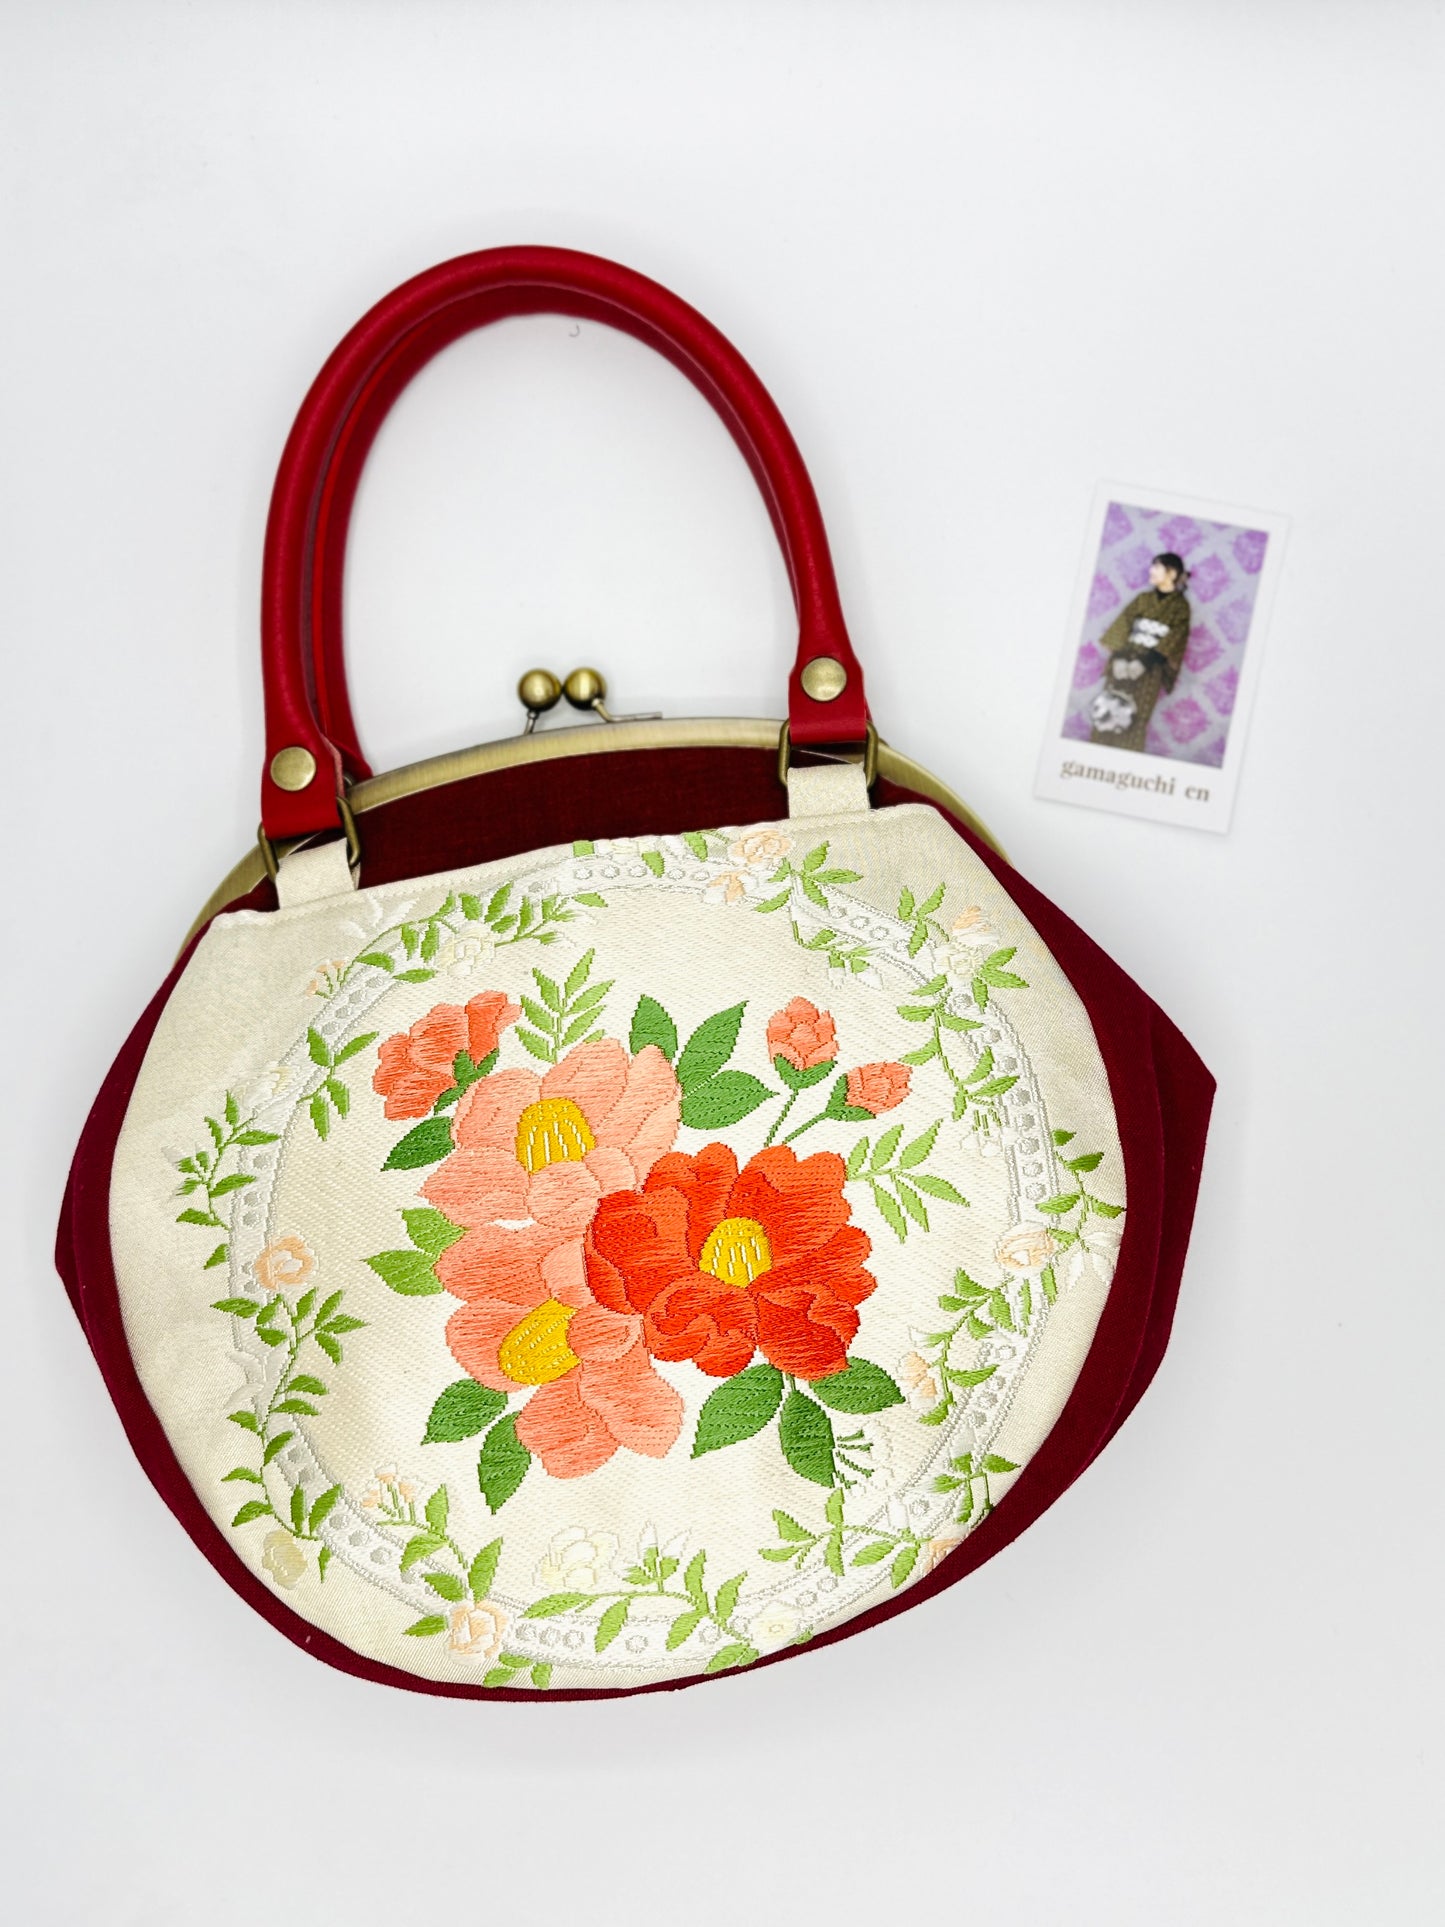 【Red/Camellia】Gamaguchi-en/Handbag,Clutch,Pouch,Japanese bag,Shoulder bag,Japanese Gifts